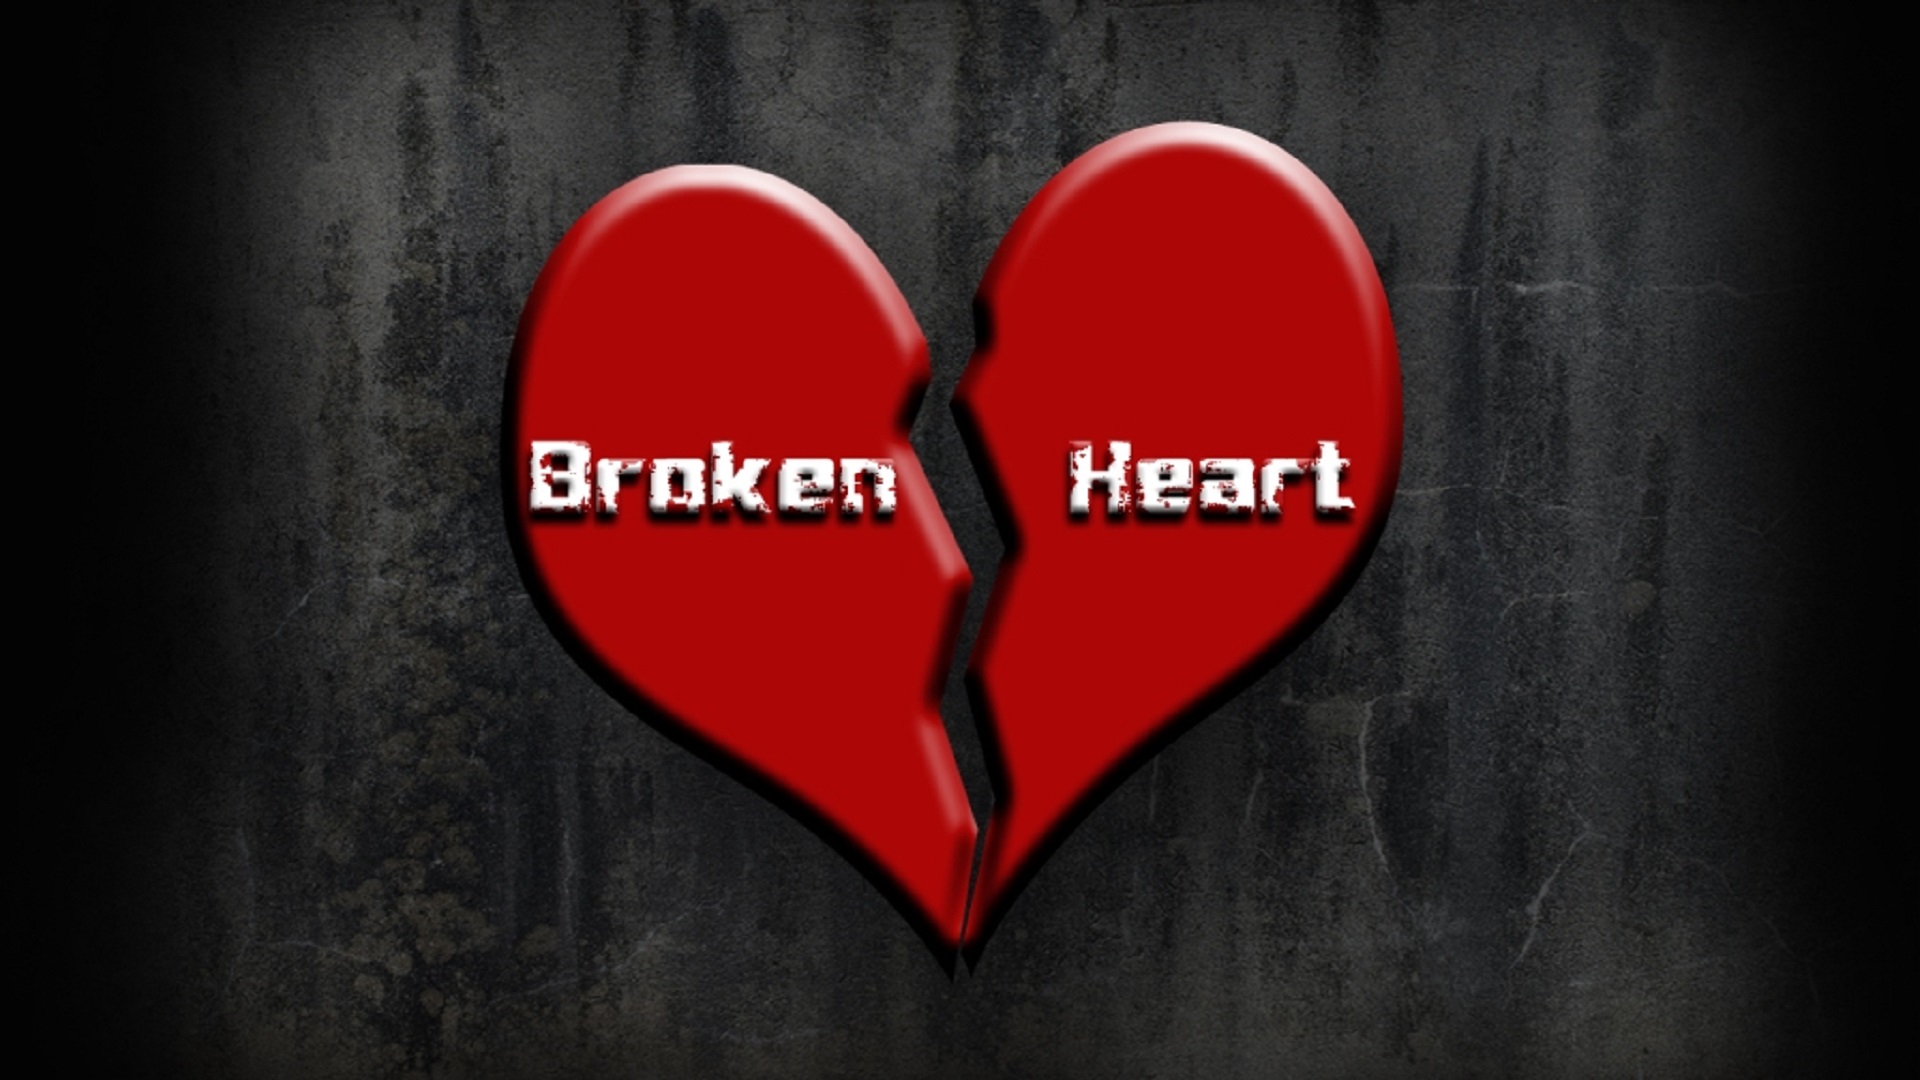 broken hearts gallery